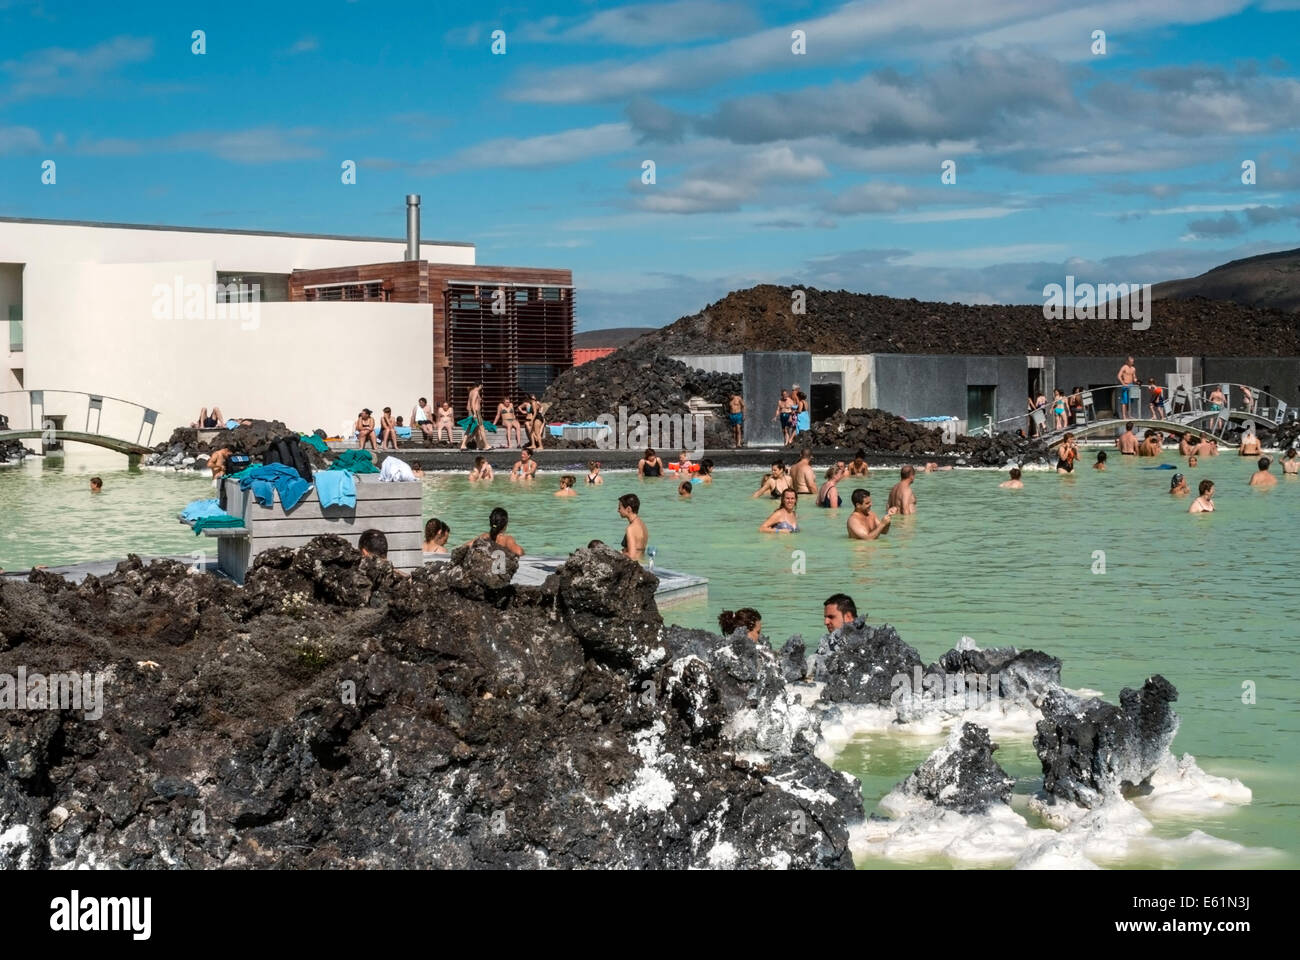 Los lugareños y turistas disfrutando de la piscina natural en el Blue Lagoon, Islandia. Foto de stock